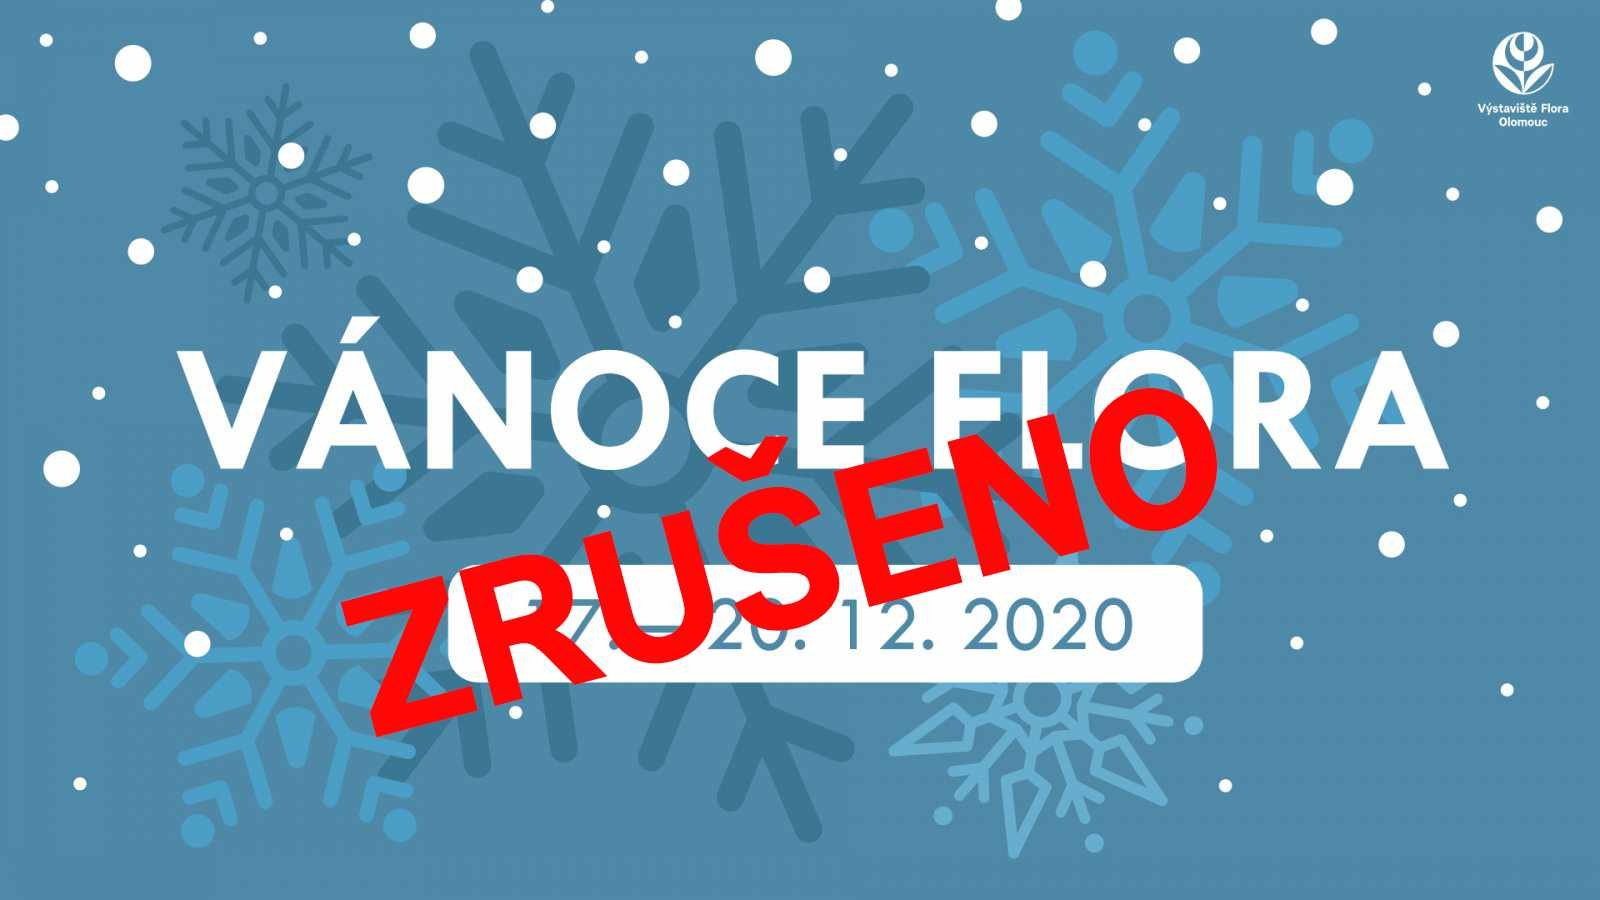 Vánoce Flora 2020 - zrušeno 